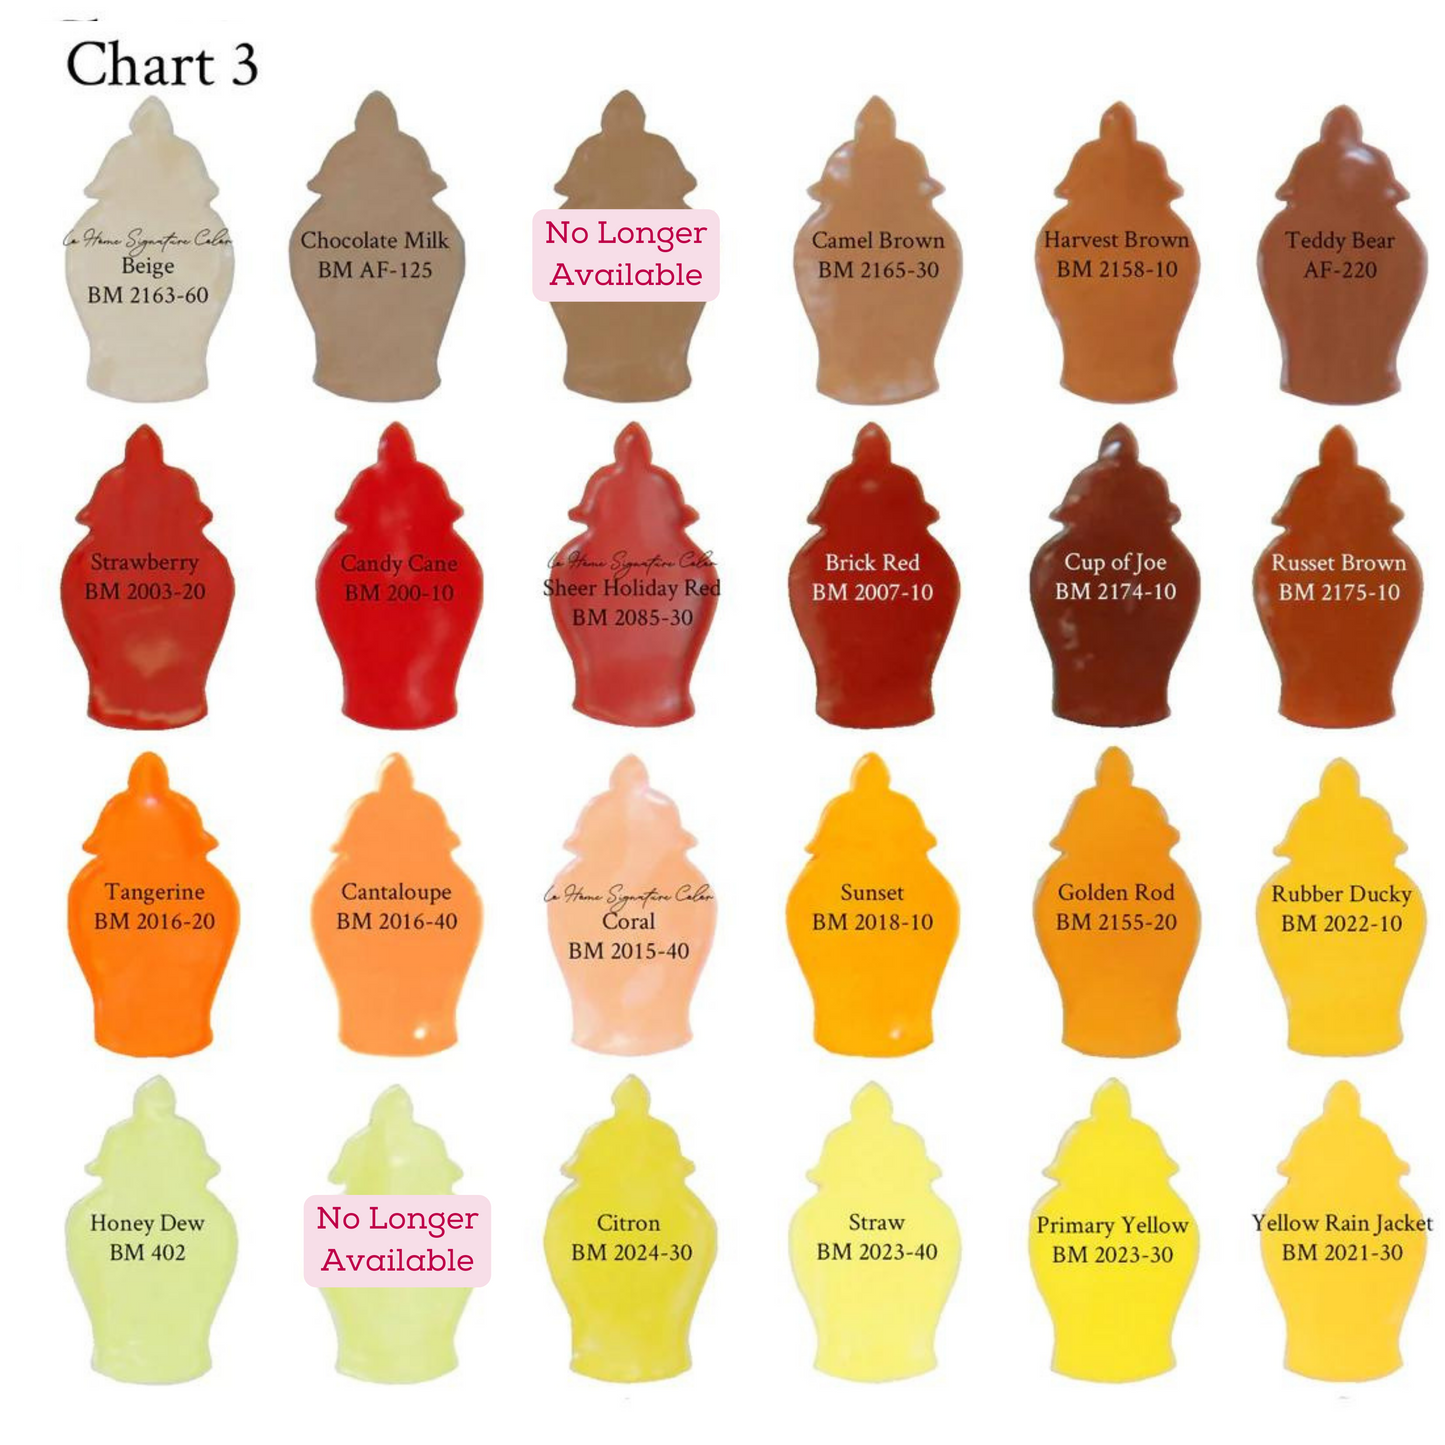 Custom Color Block Ginger Jars